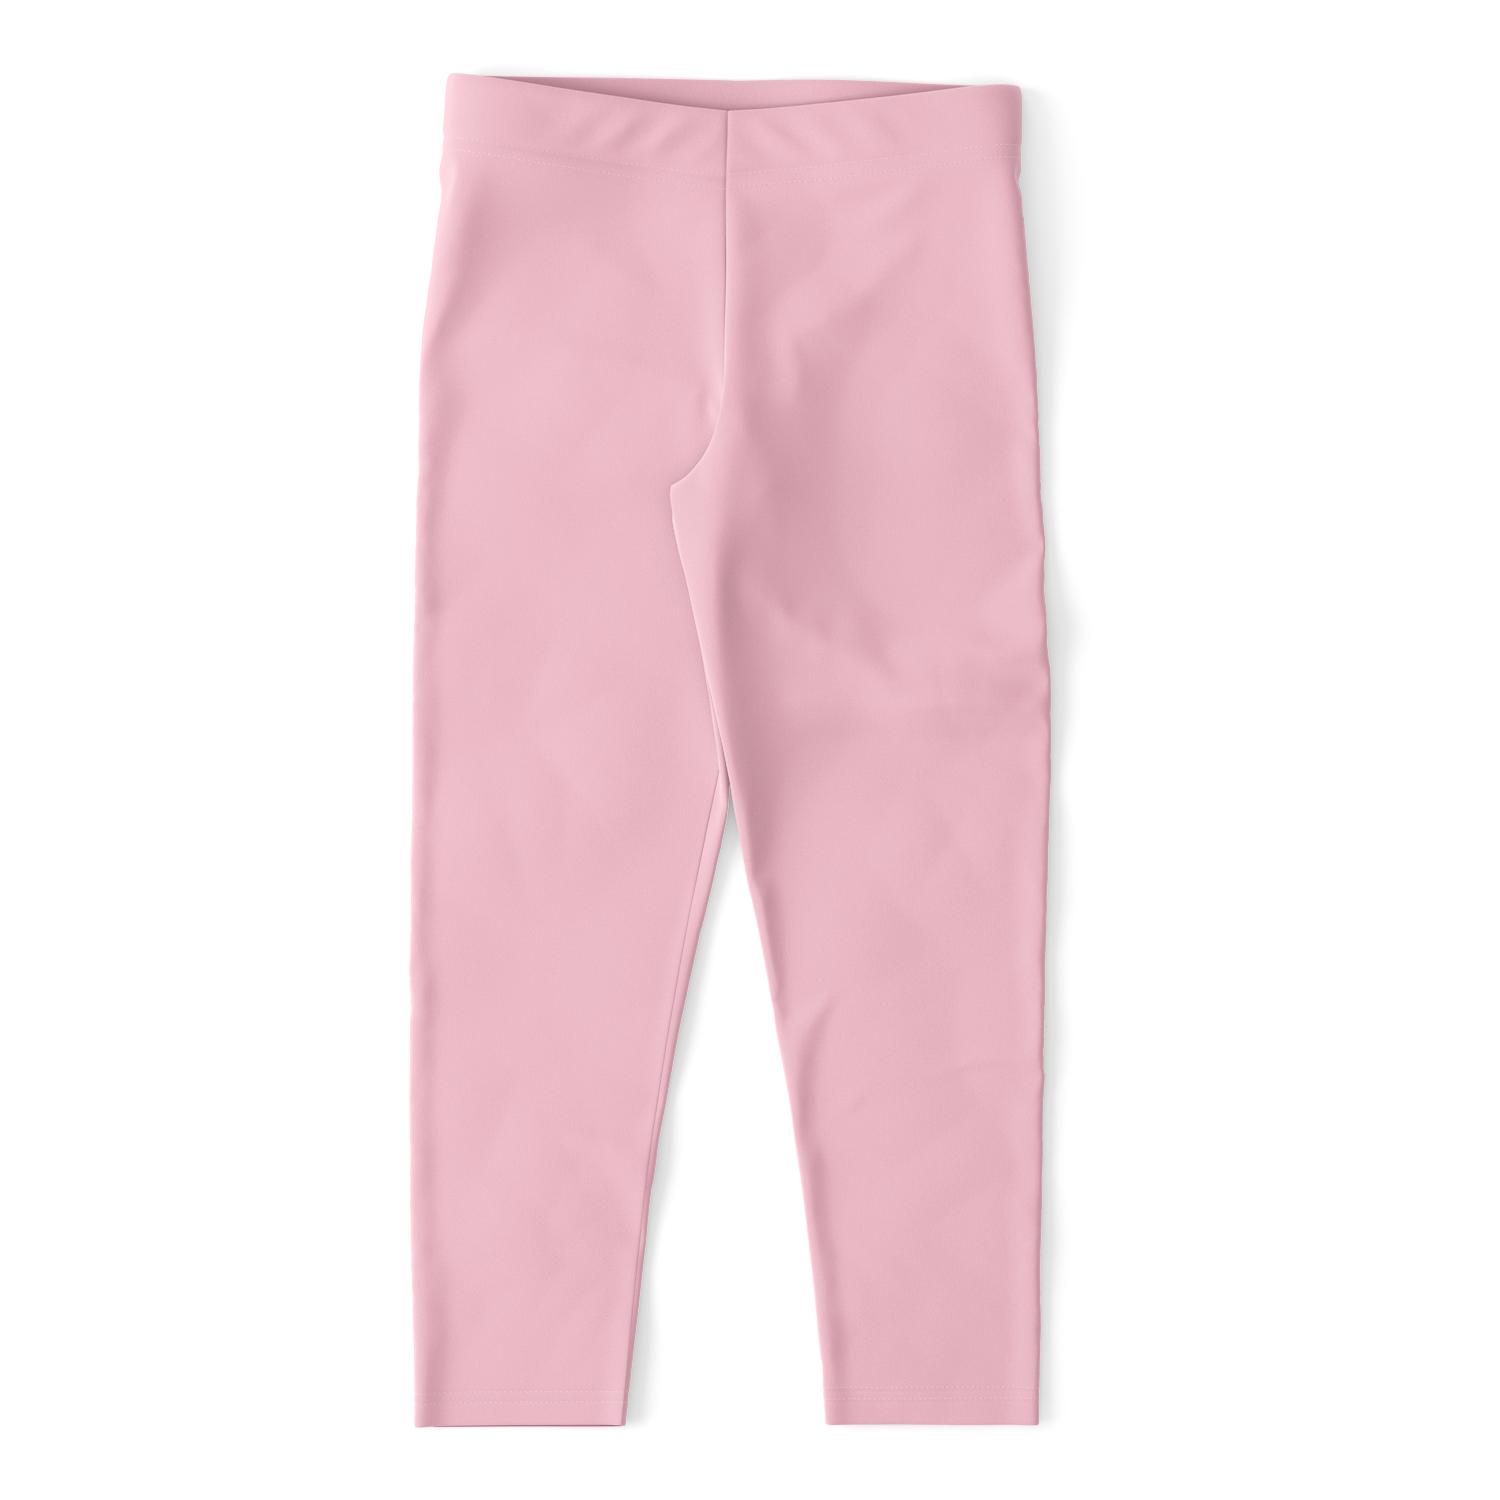 Pale Pink Capri Leggings - Arcadia Apparel